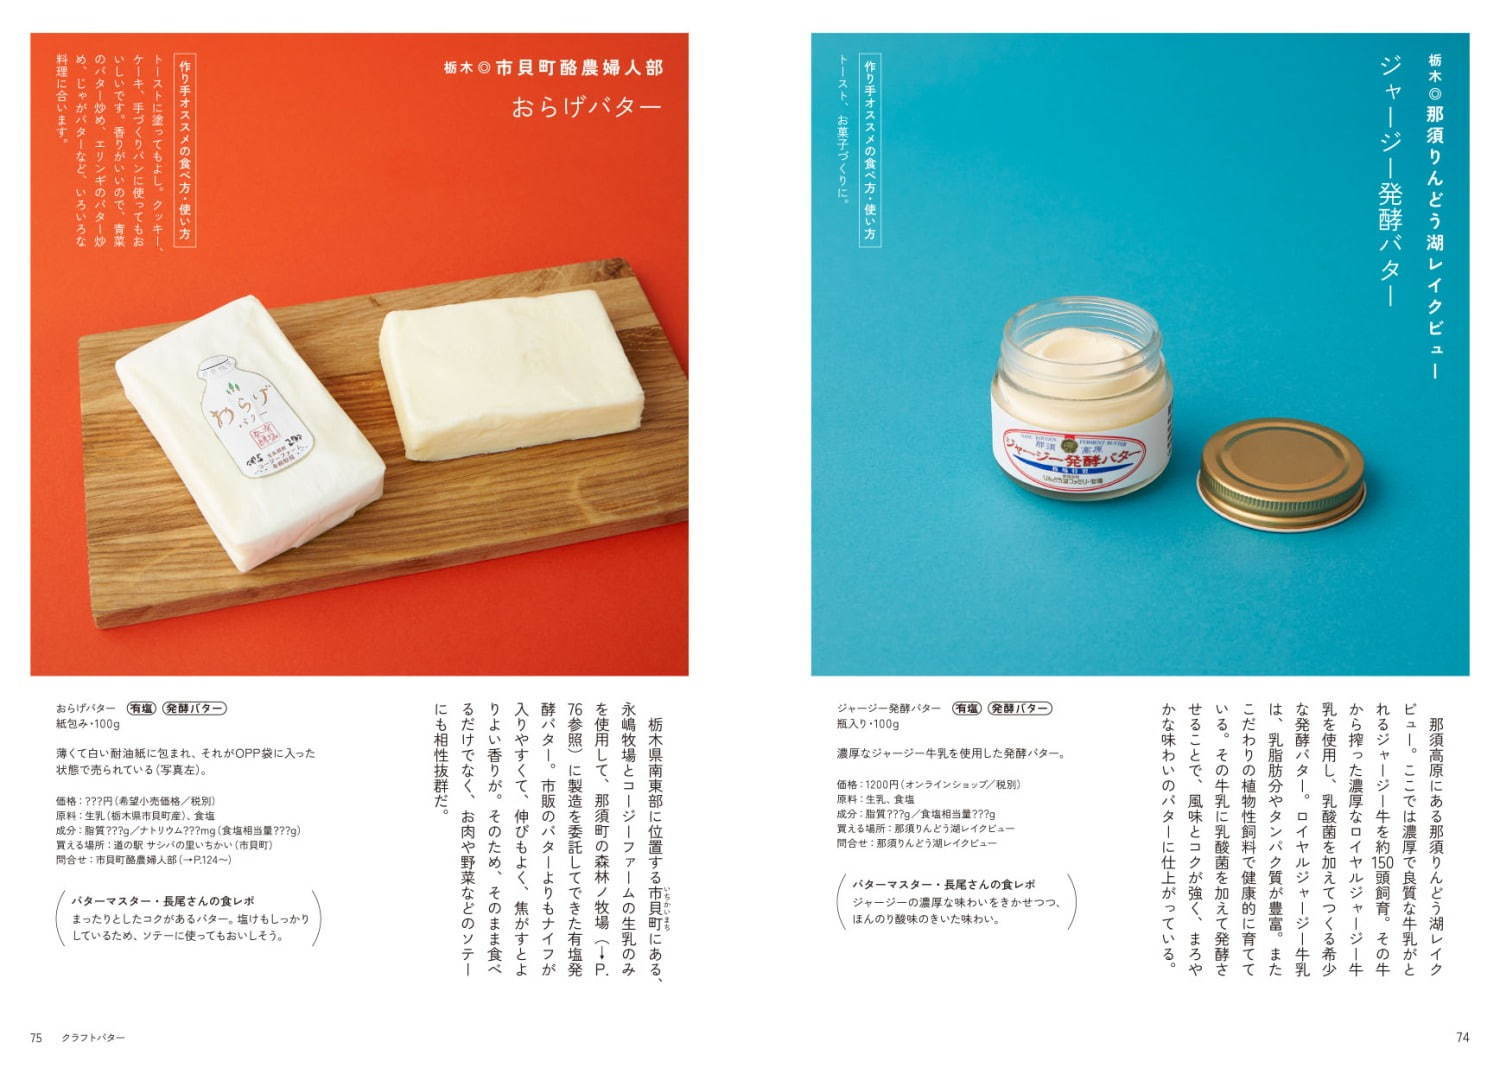 「くいしんぼうのバターまつり」東京・青山で - 全国から約100種類が集結、レアバターの販売も | 写真